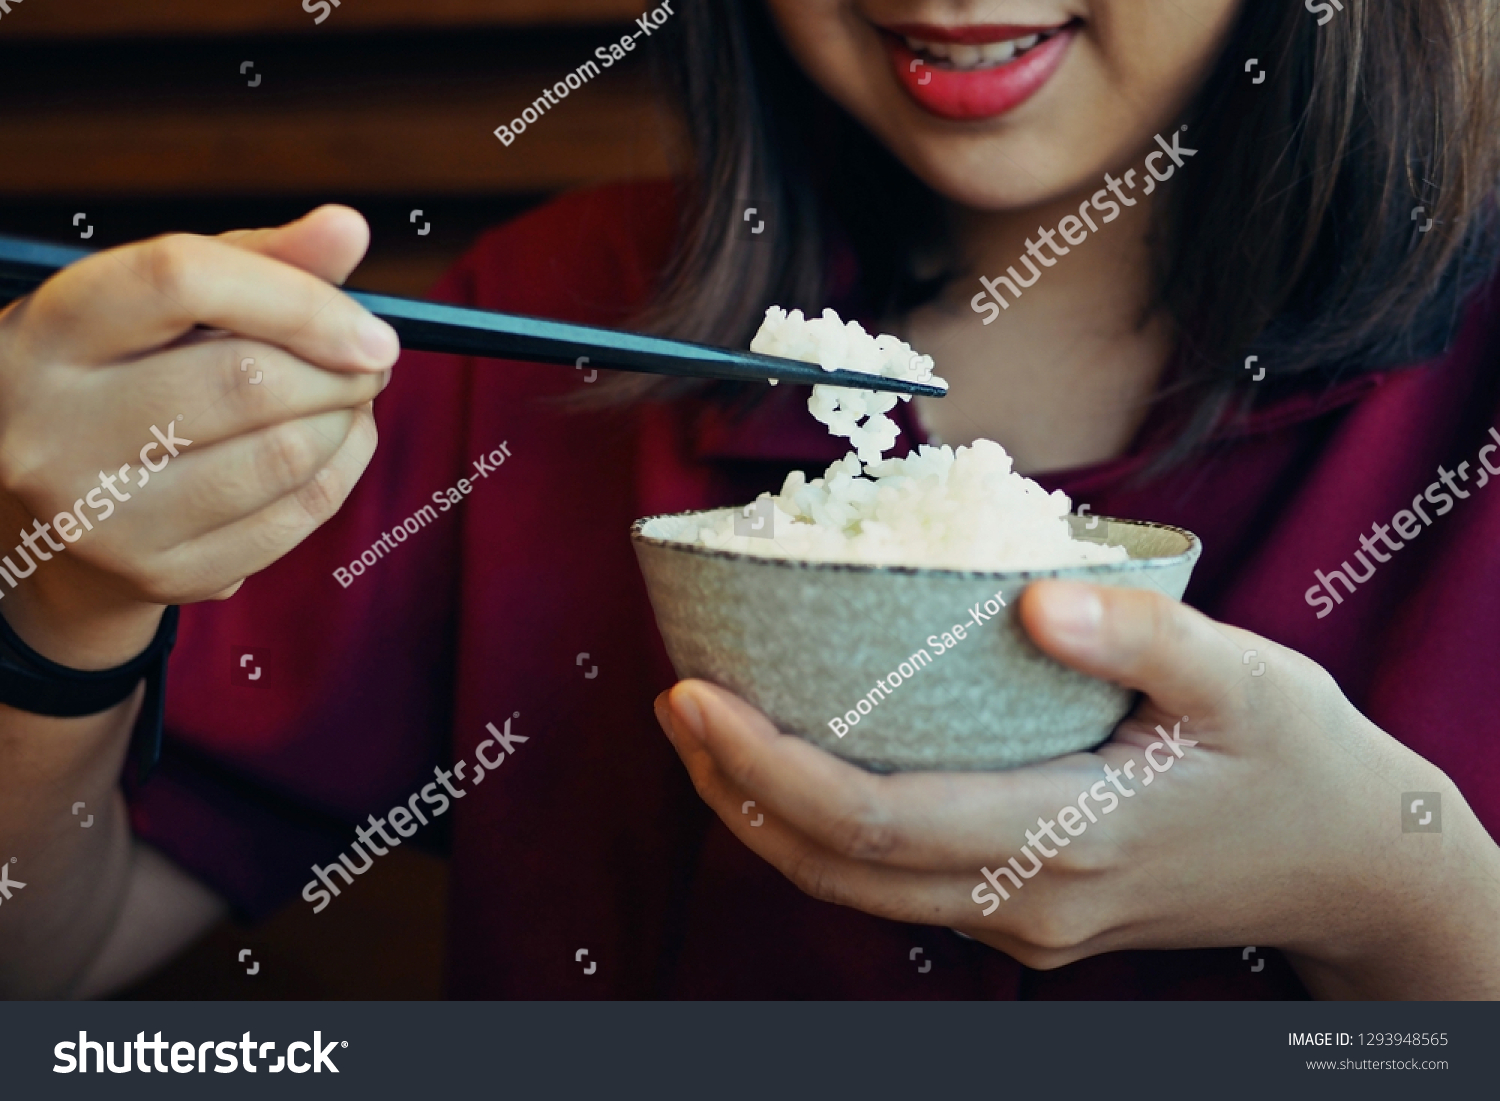 using chopsticks to eat rice